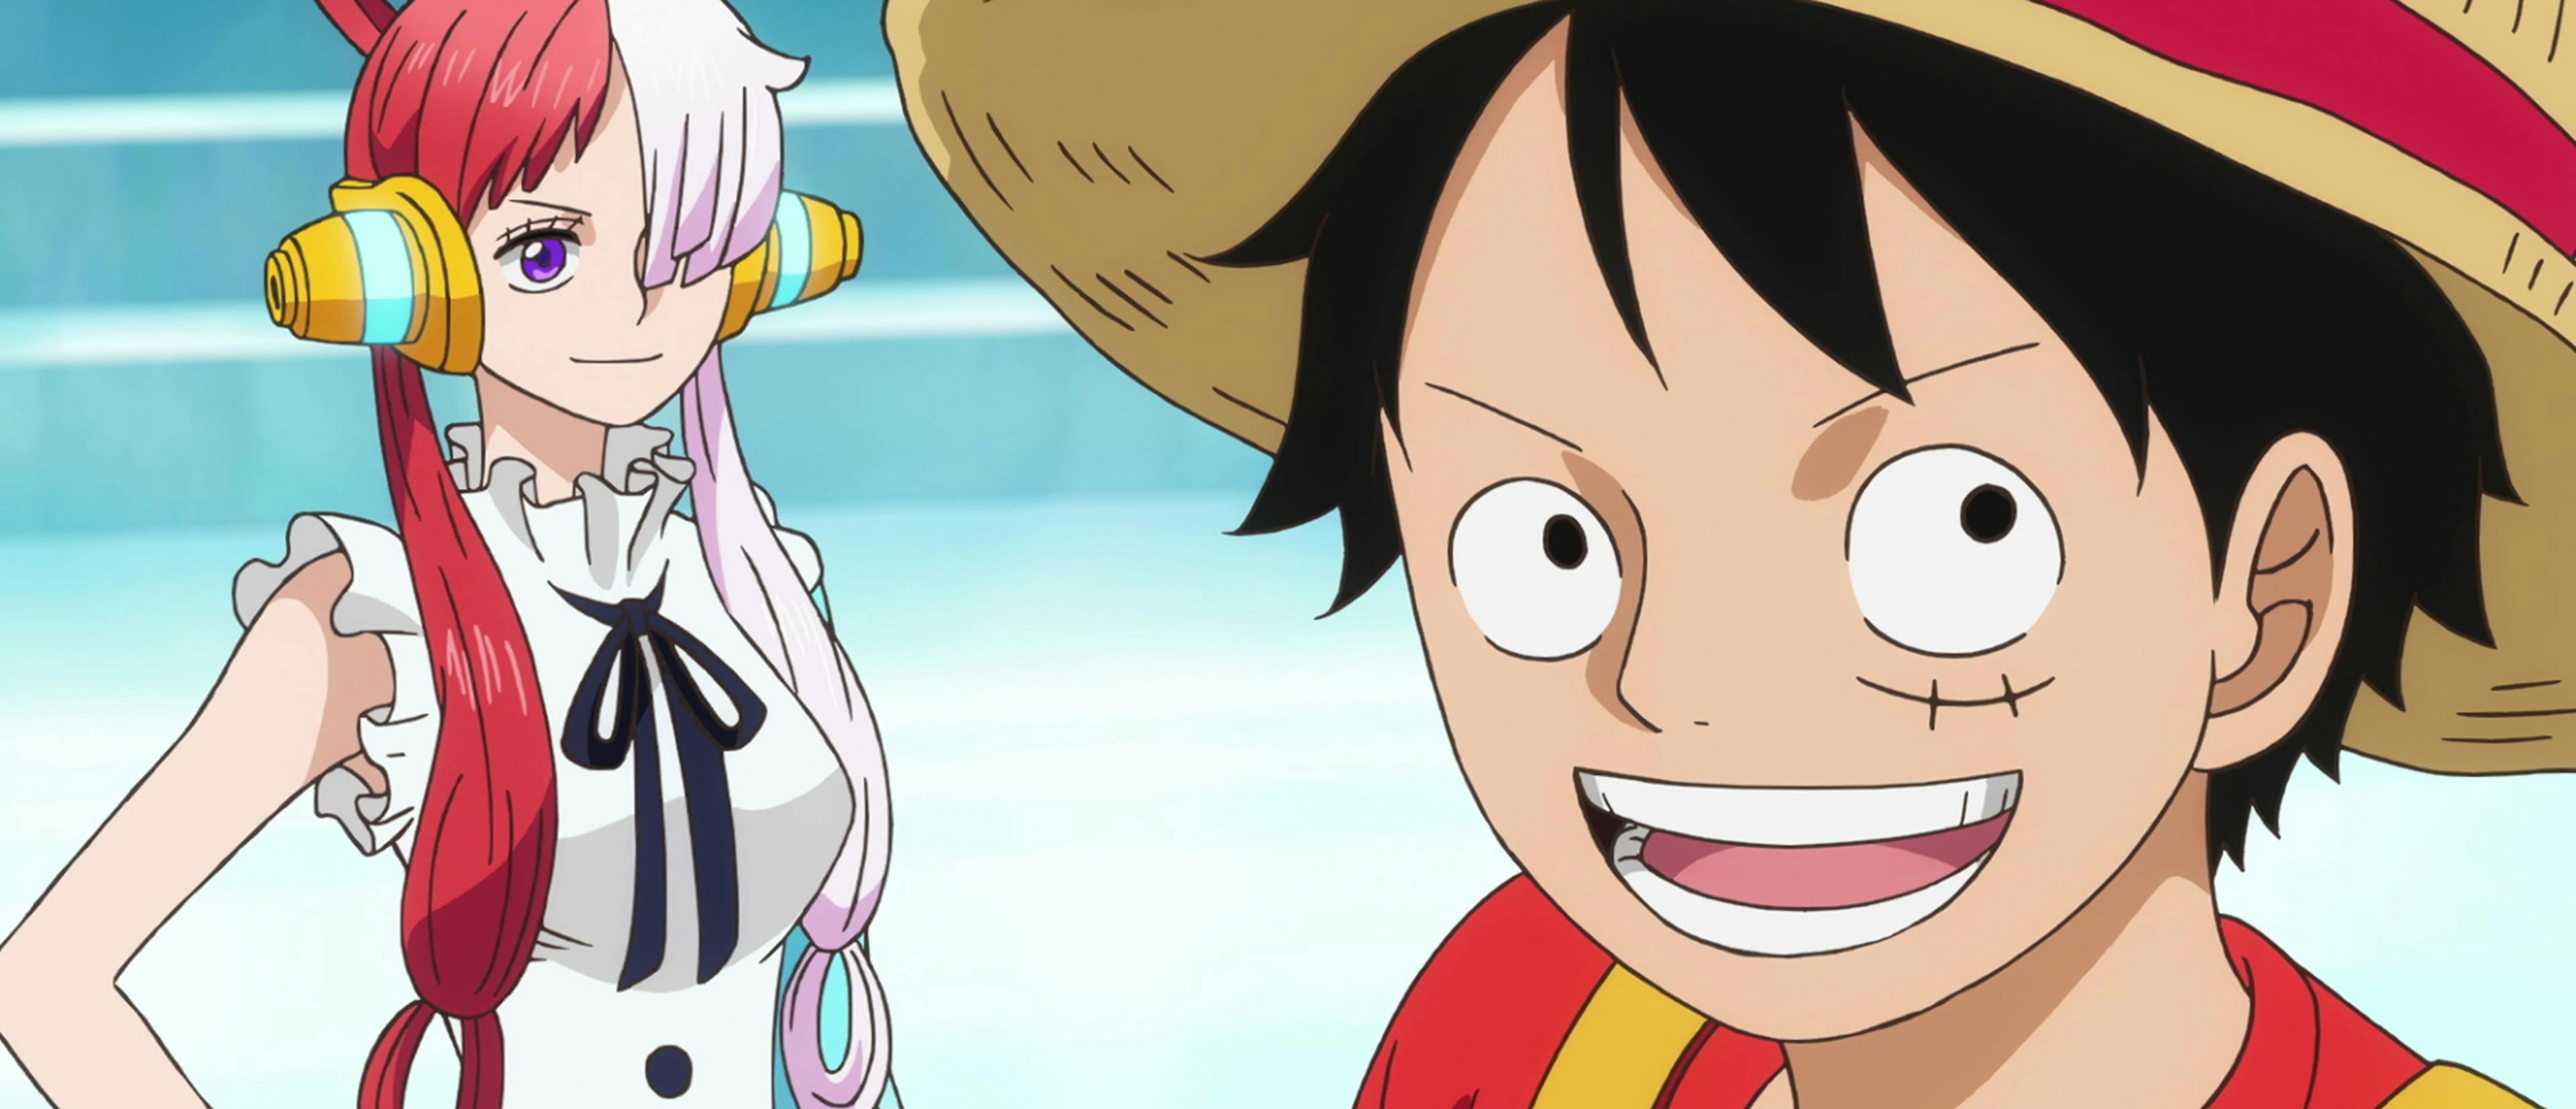 Imagen de una de las adaptaciones anime del manga 'One Piece'